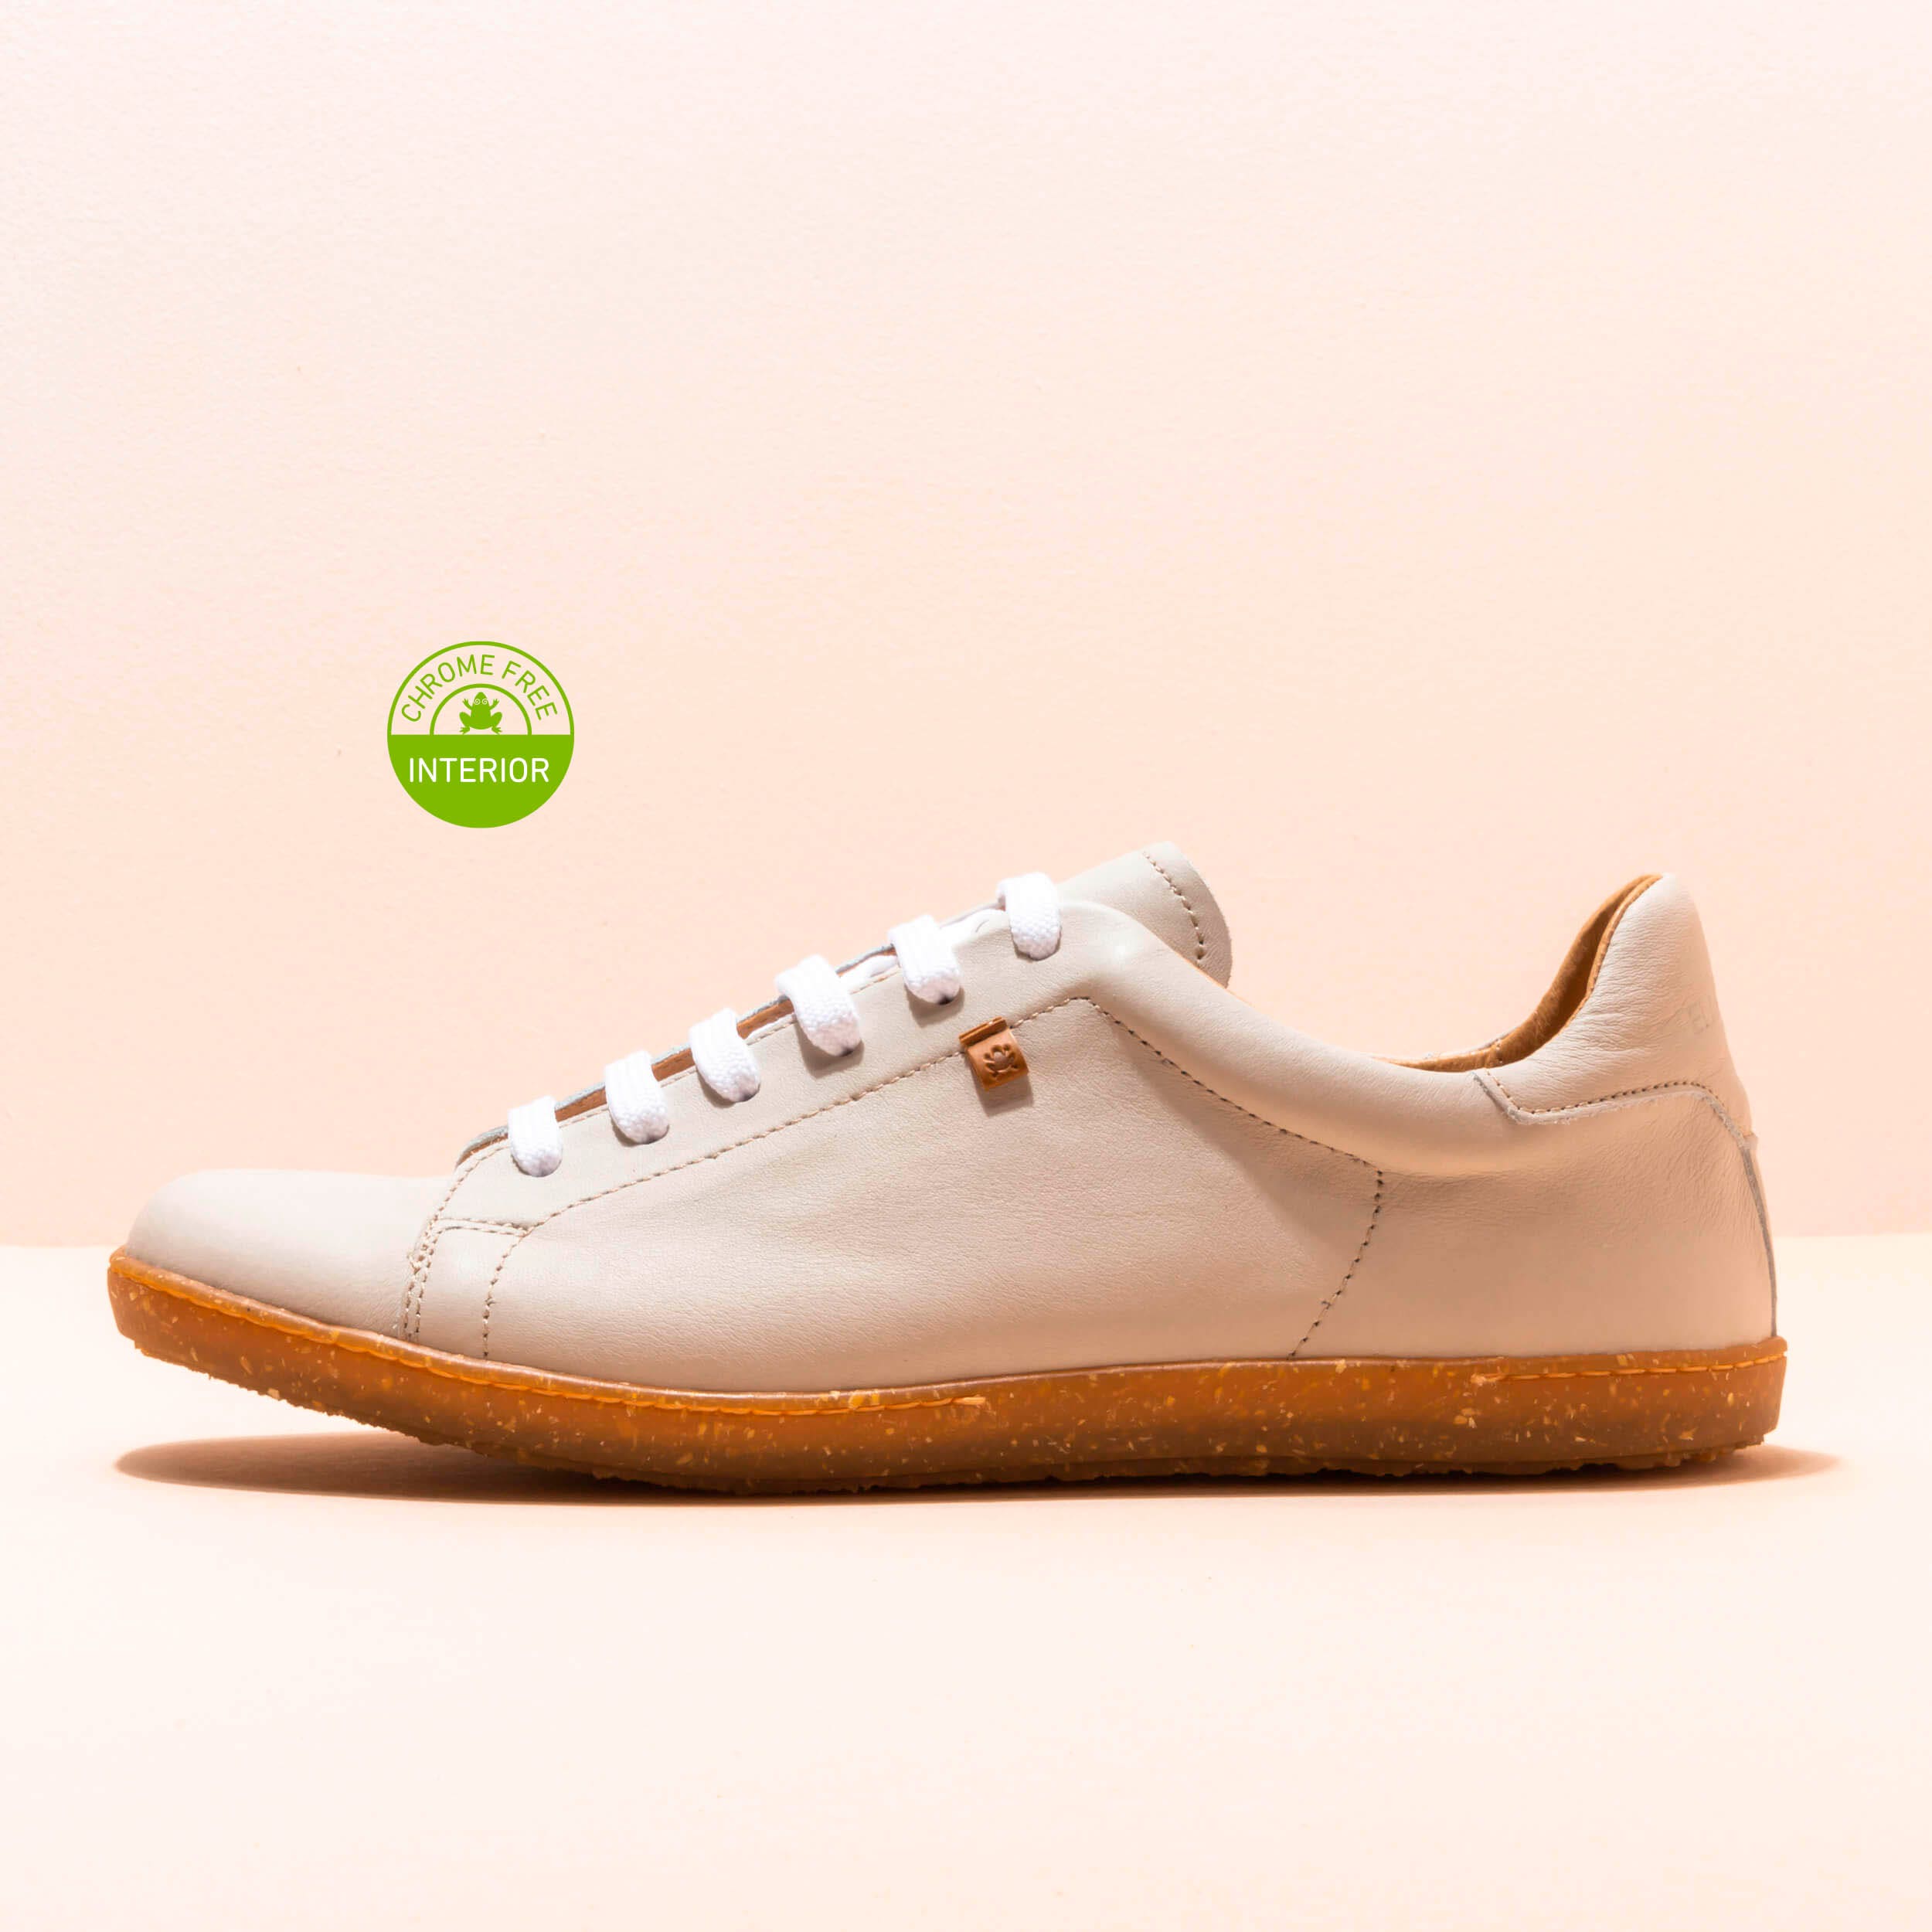 El Naturalista - El naturalista Zapatos N355 NOBUCK-W WHITE / ESTRATOS para Hombre/Mujer color White